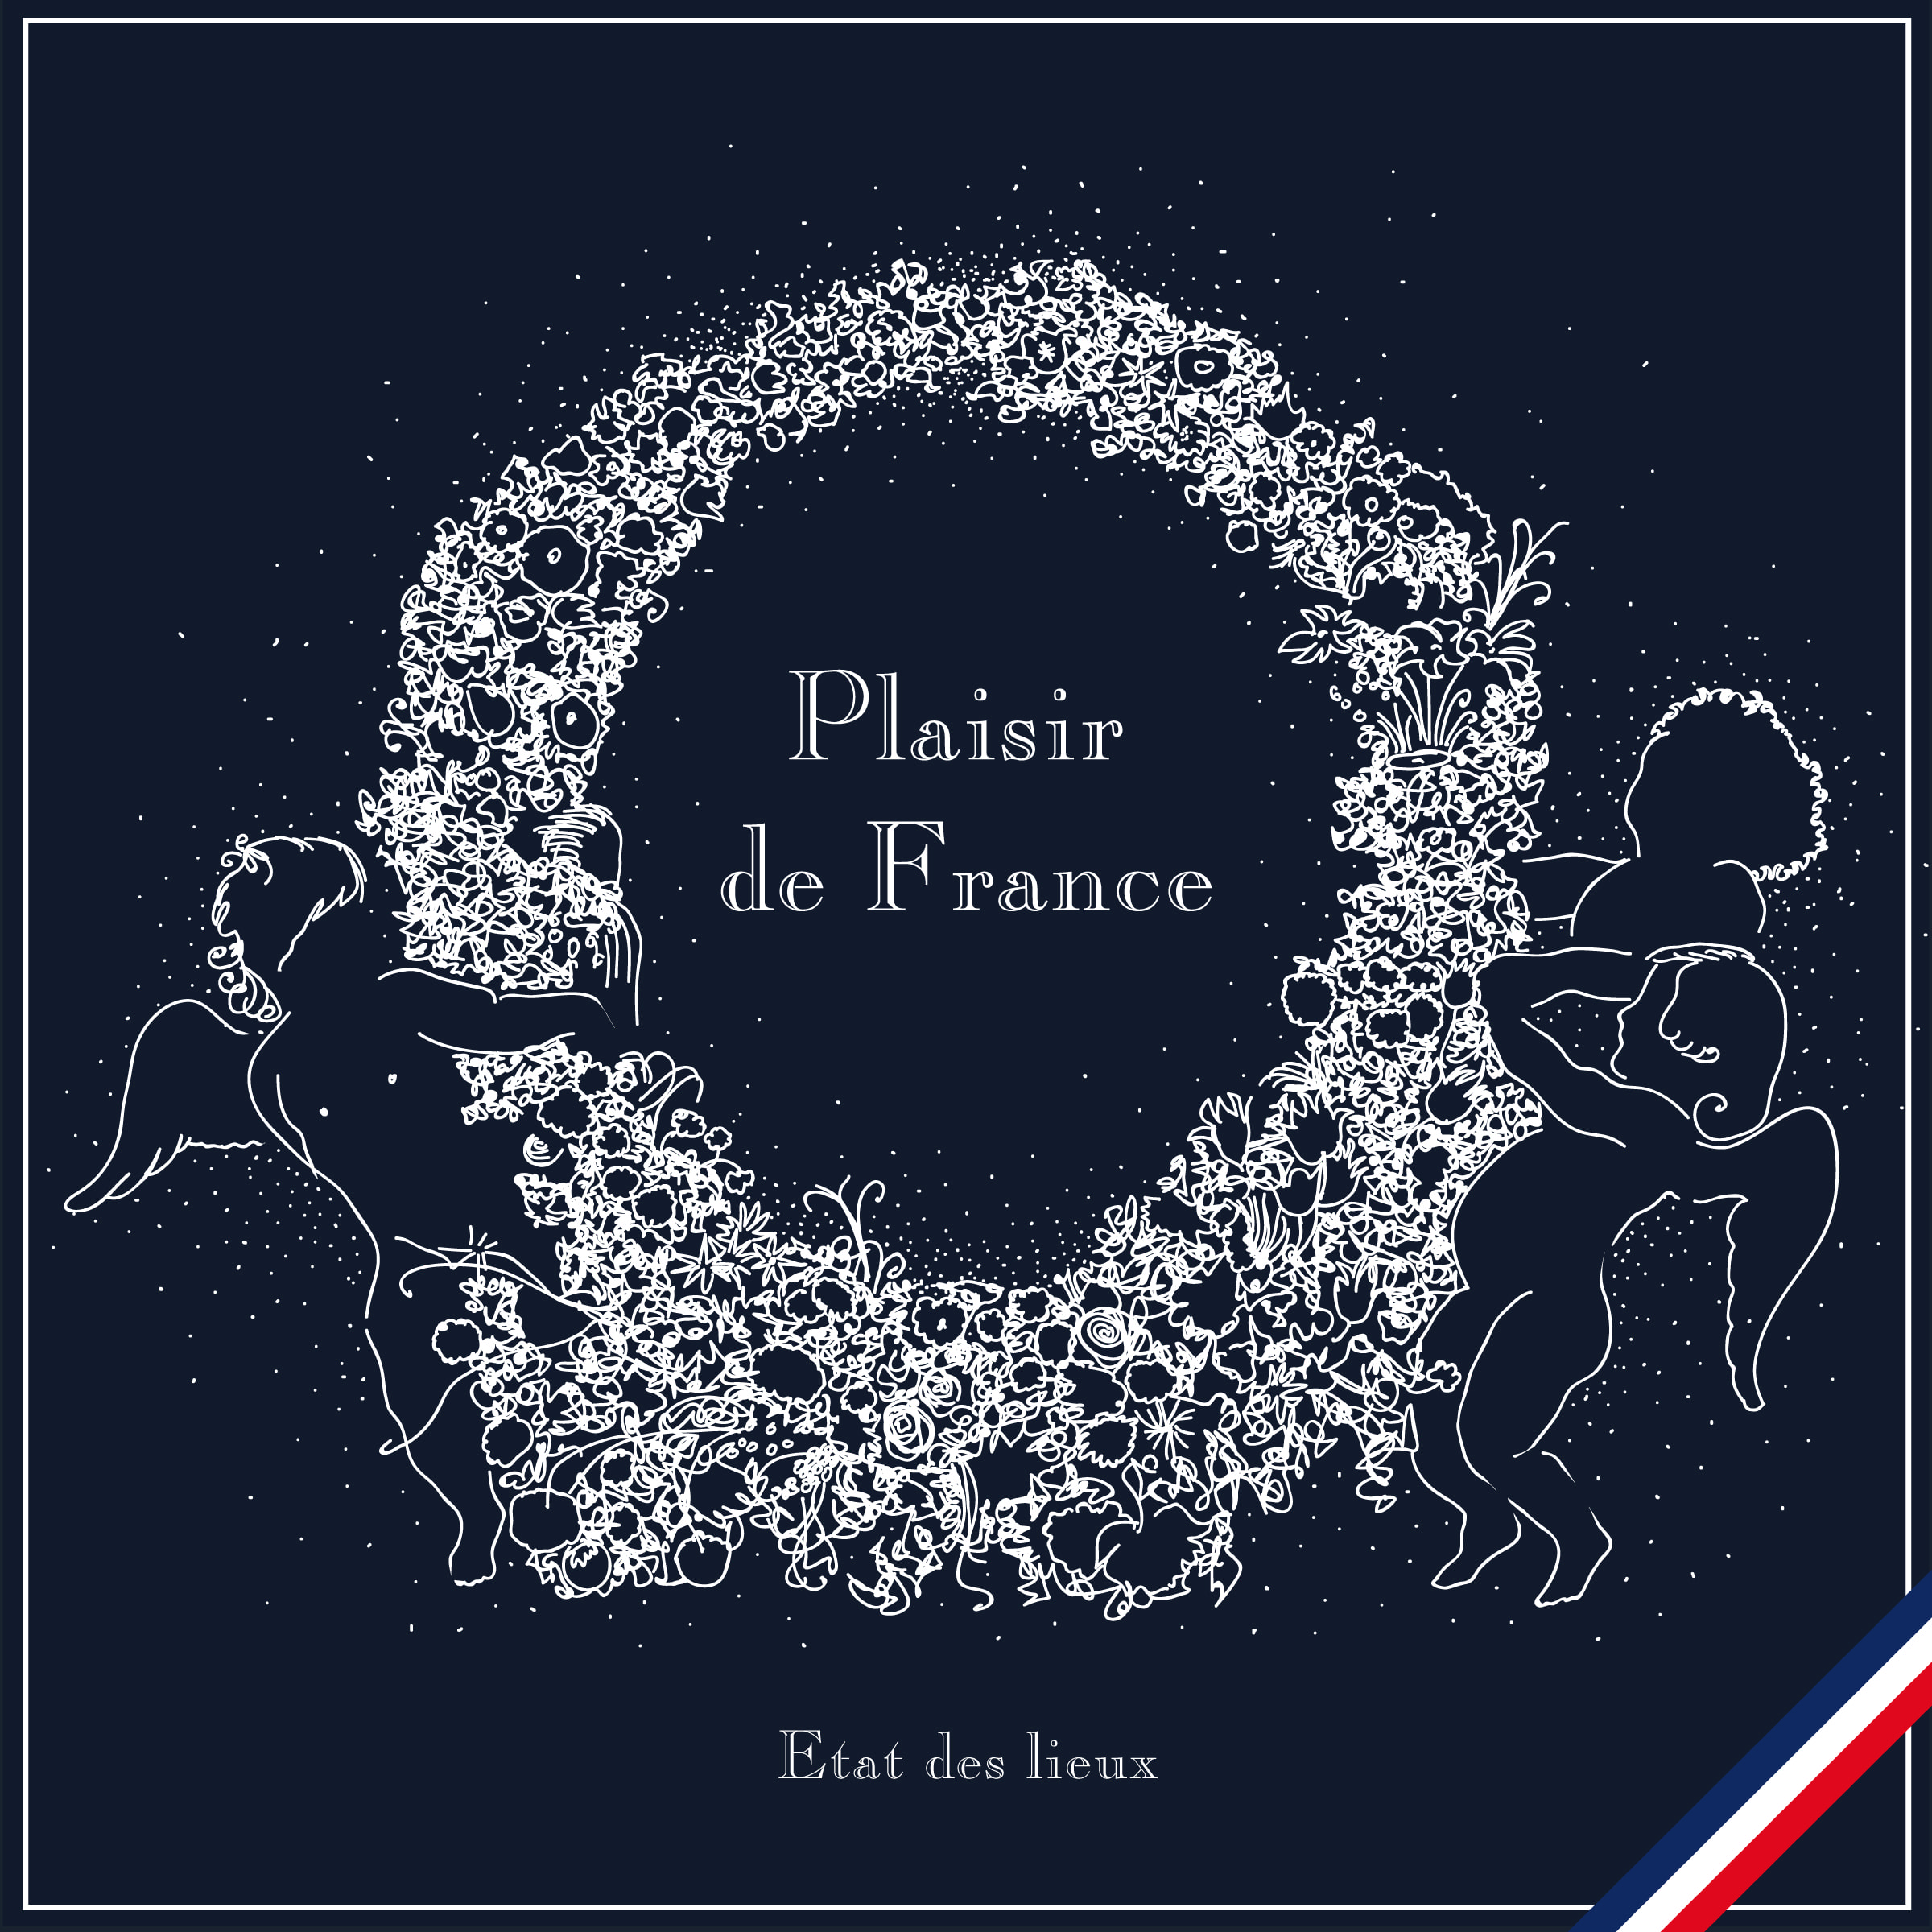 Disaster ((Plaisir de France Remix))